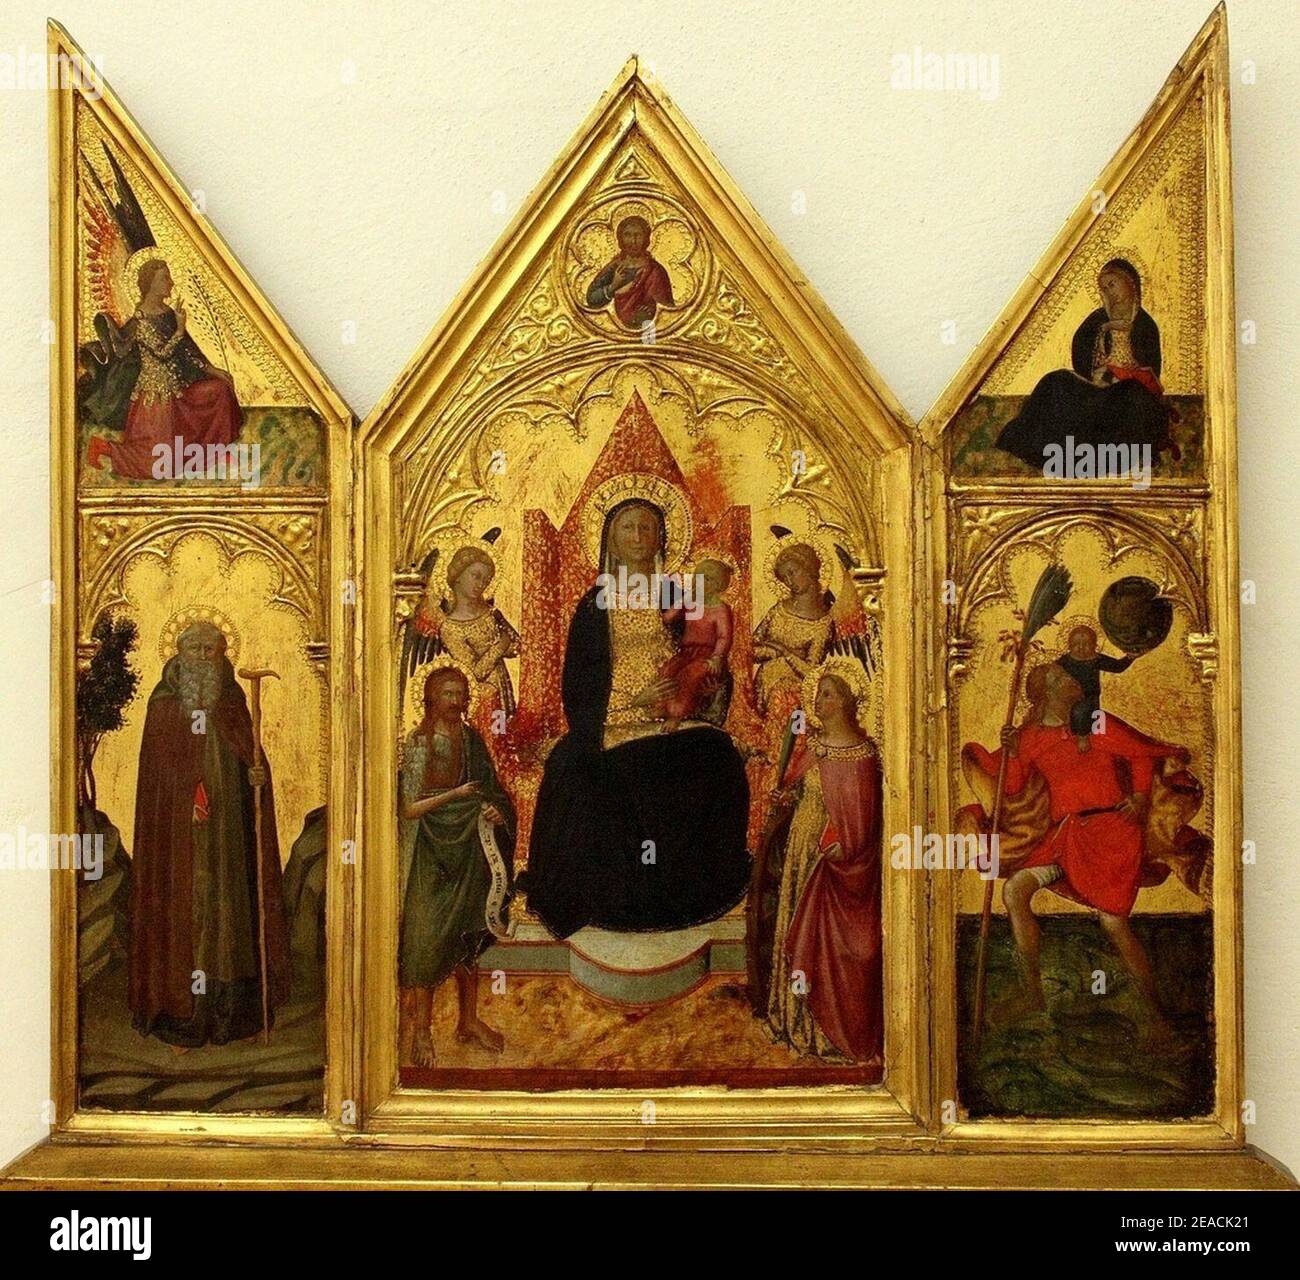 Niccolo di Buonaccorso.Triptych of the Virgin and Chrild enthroned. Stock Photo